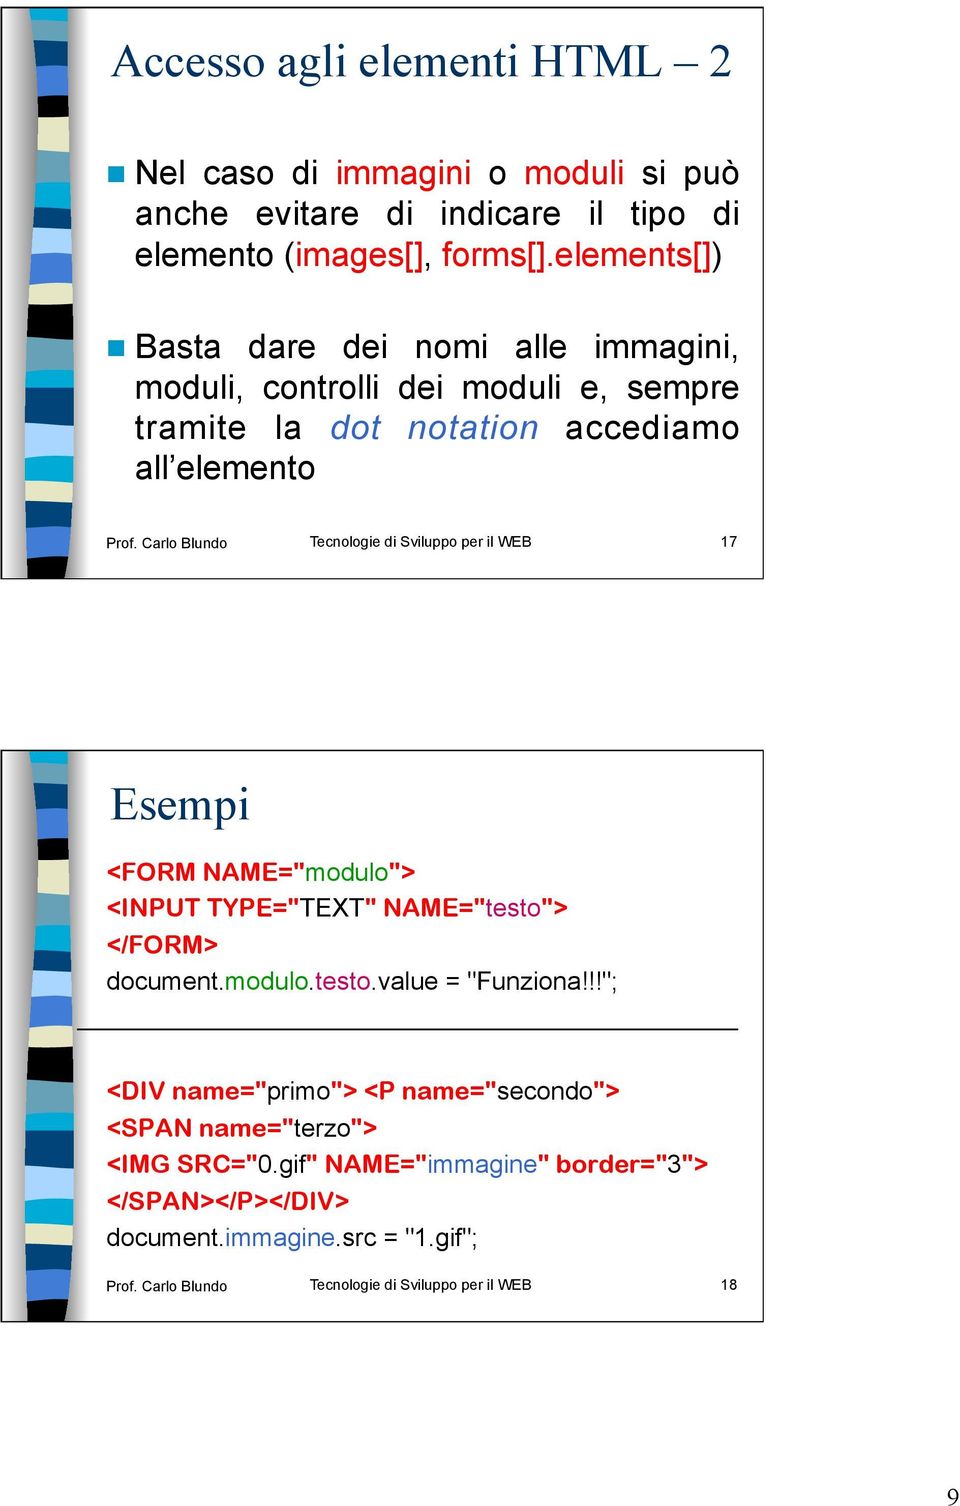 Carlo Blundo Tecnologie di Sviluppo per il WEB 17 Esempi <FORM NAME="modulo"> <INPUT TYPE="TEXT" NAME="testo"> </FORM> document.modulo.testo.value = "Funziona!